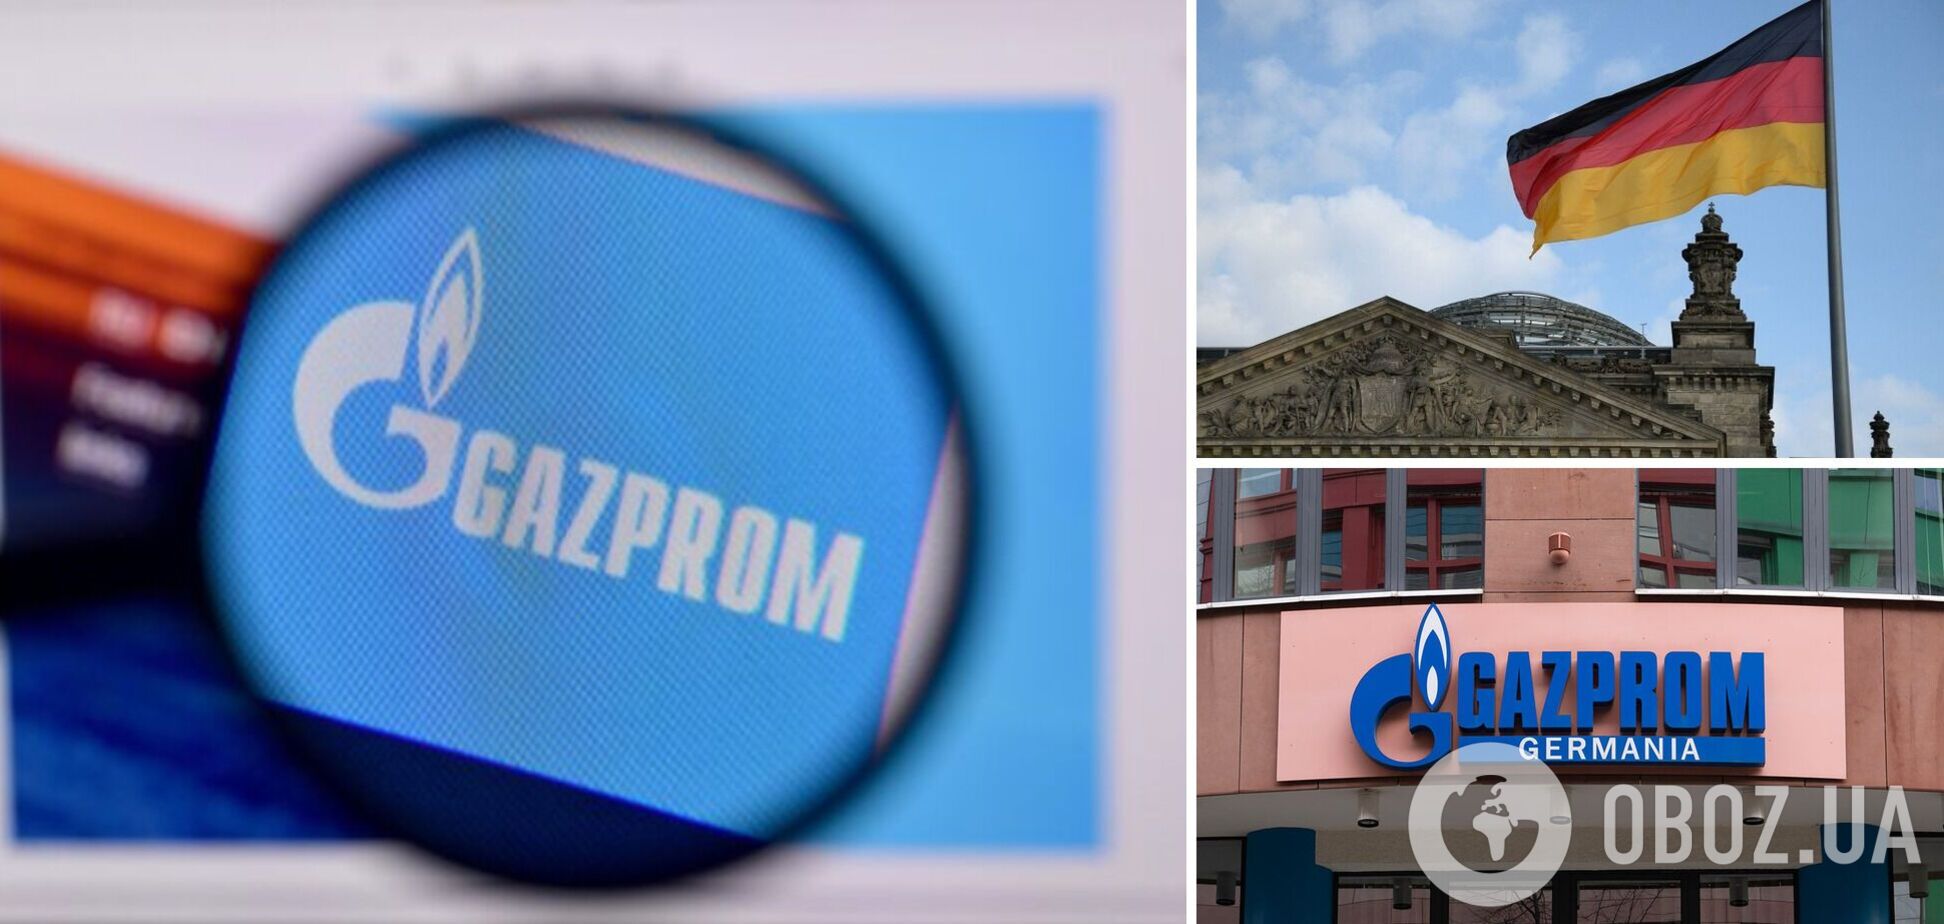 'Газпром' вимагає від GAZPROM Germania припинити використання товарних знаків фірми